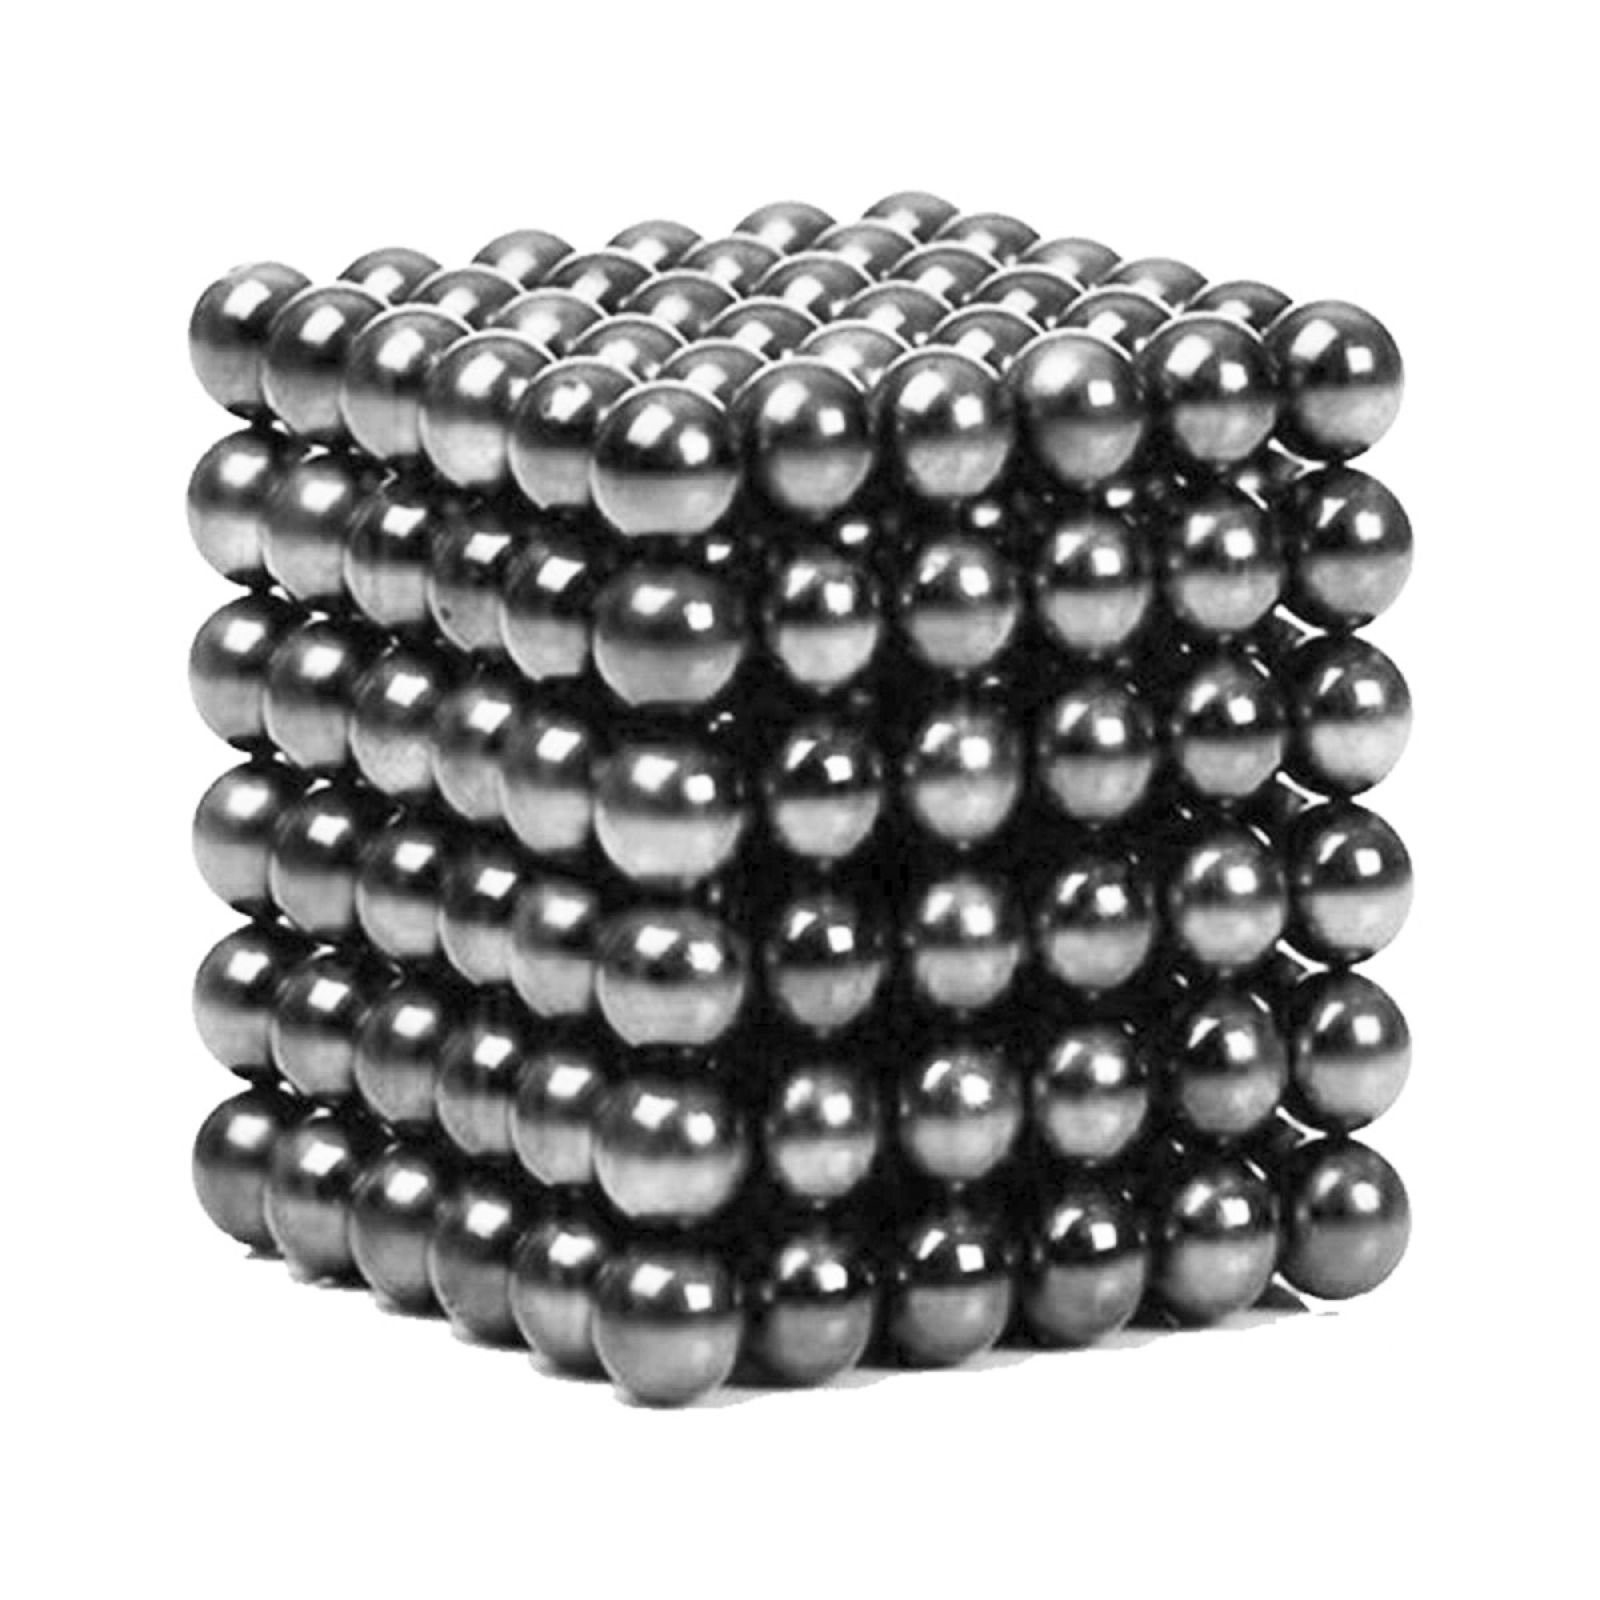 FurniSafe Magnetspielbausteine FurniSafe Neocube aus 5 mm Magnetkugeln - Grau - Set mit 216 Kugeln